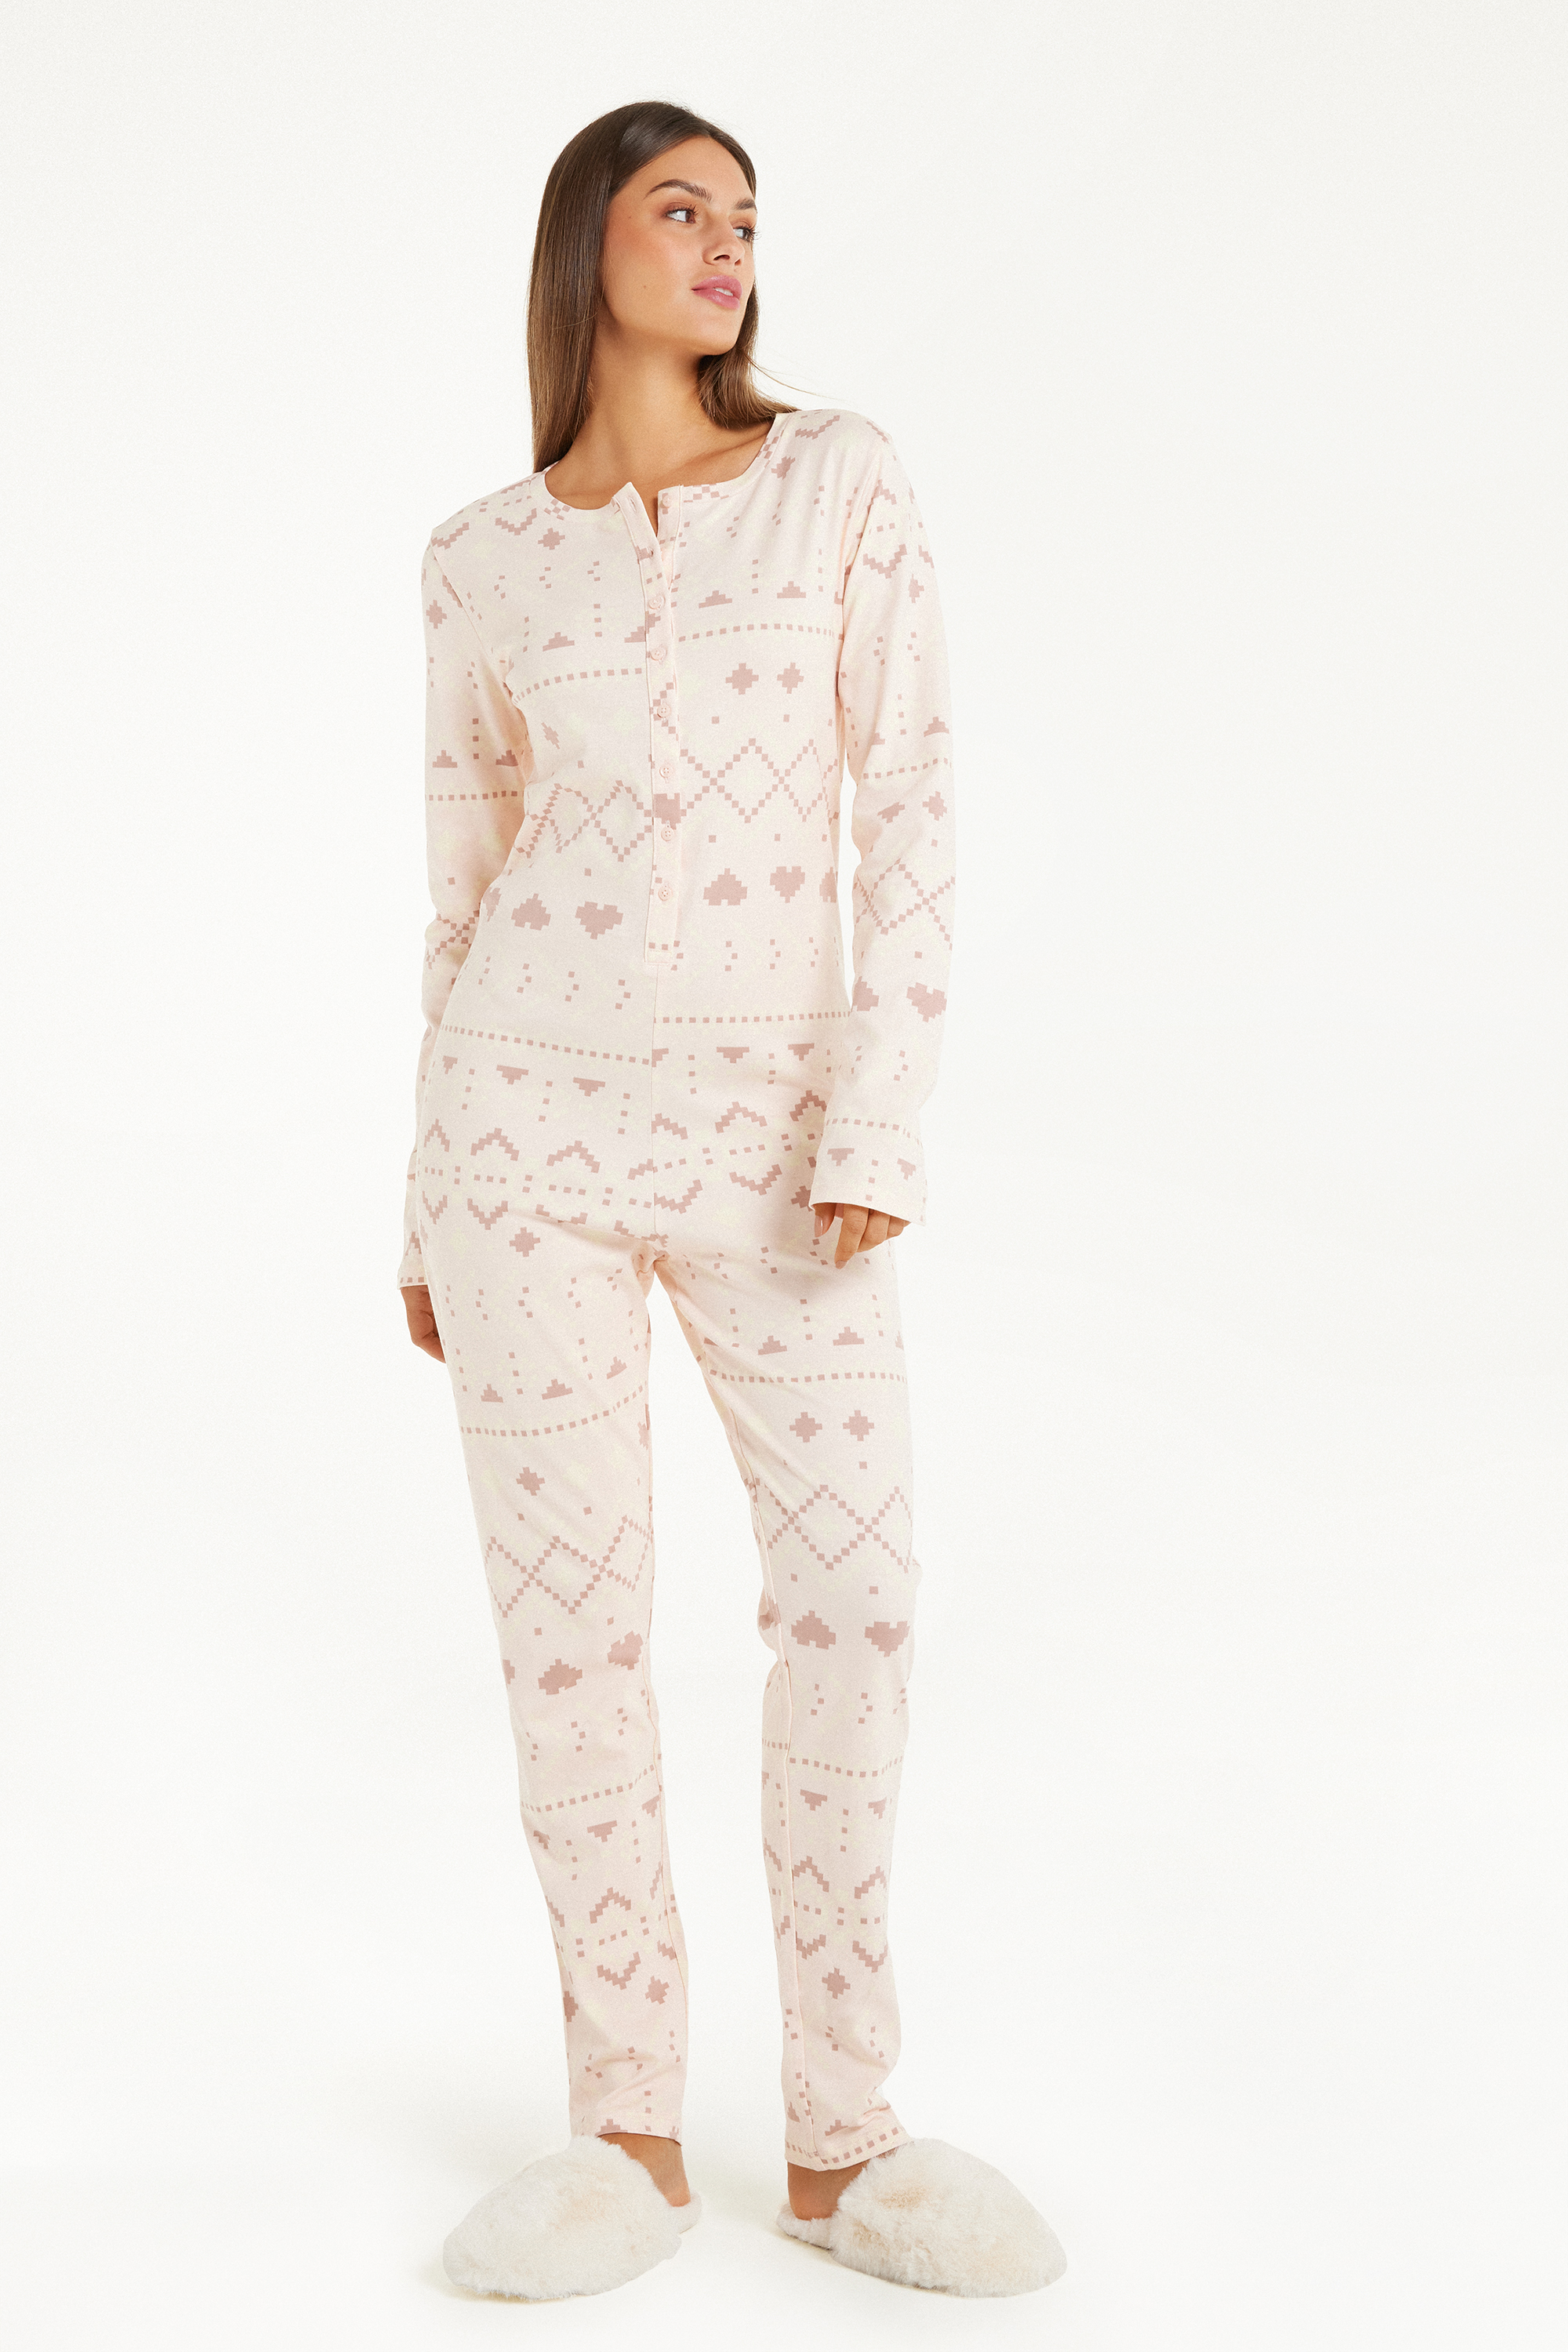 Nordic Print Heavy Cotton Onesie Pyjamas